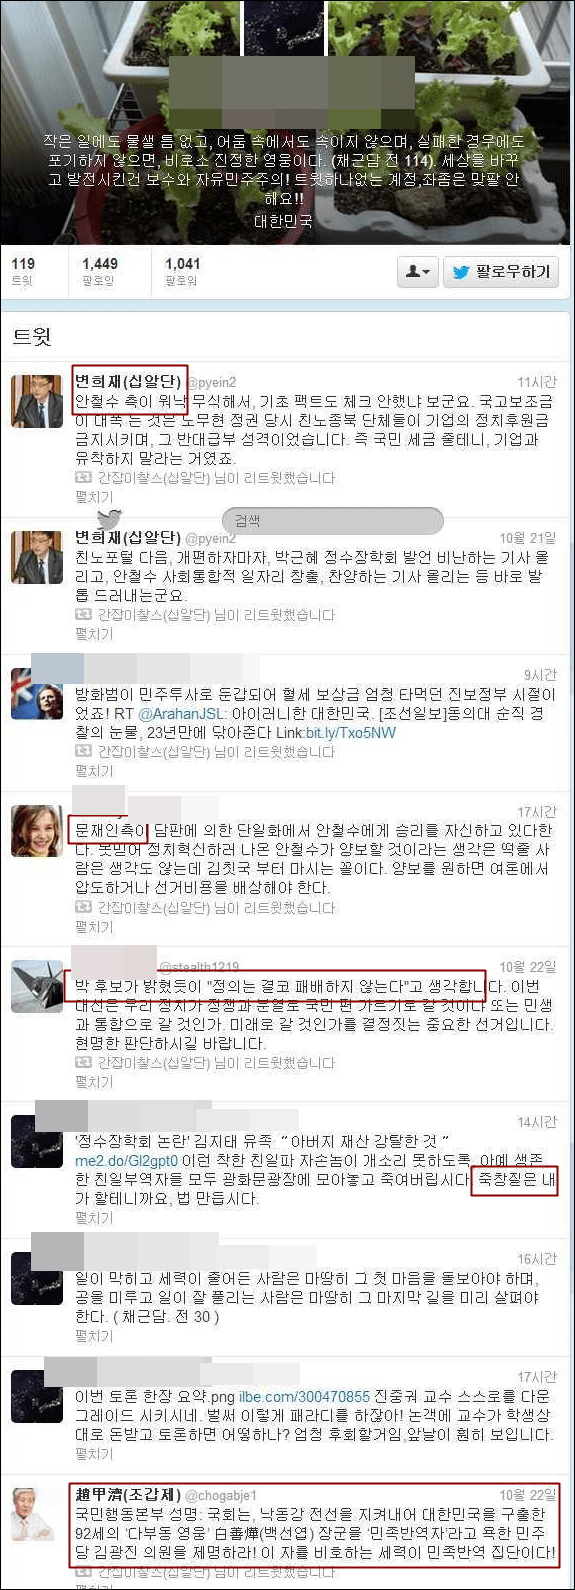 ▲자칭 타칭 십알단으로 불리는 트위터 계정의 트윗